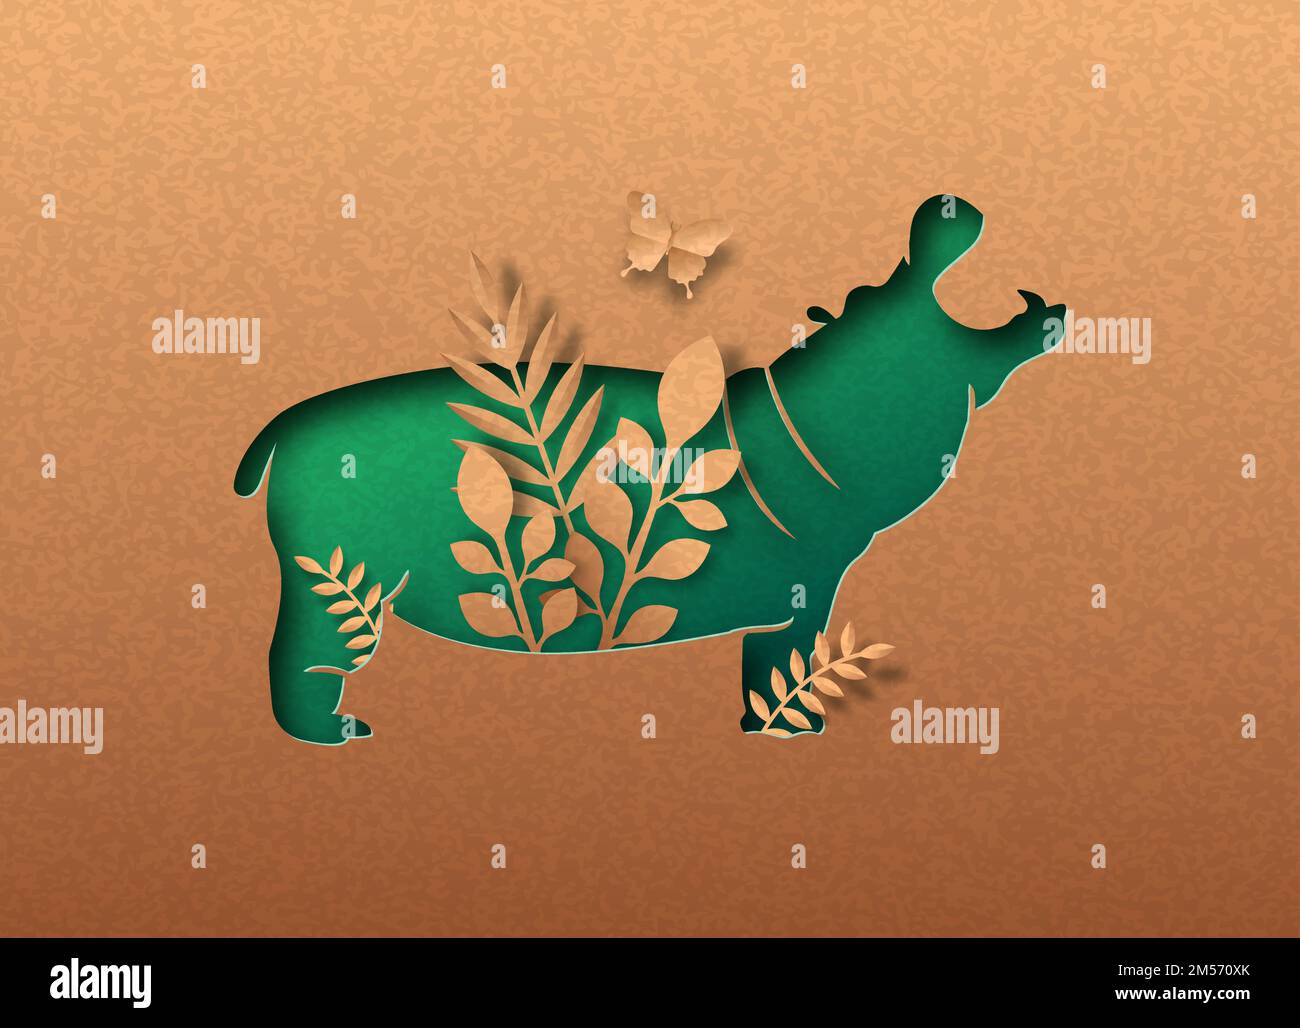 Ippopotamo verde isolato animale silhouette di papercut con foglia di pianta tropicale all'interno. Carta riciclata texture taglio concetto per africa safari, wildl Illustrazione Vettoriale